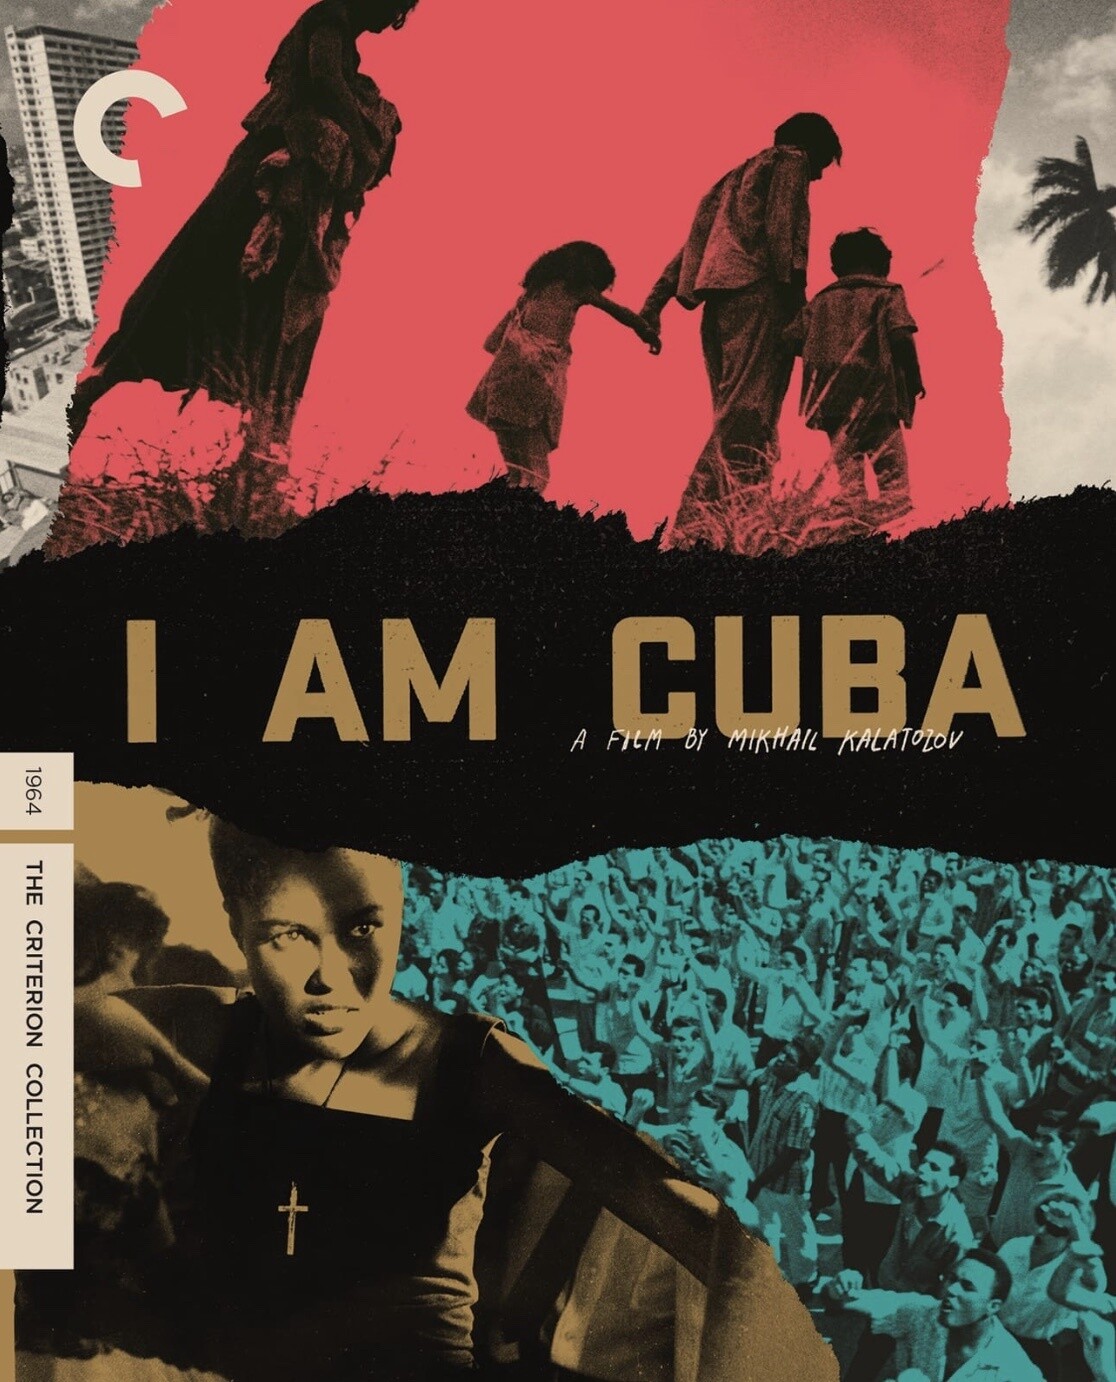 I Am Cuba (4K-UHD) ***Preorder*** 4/23